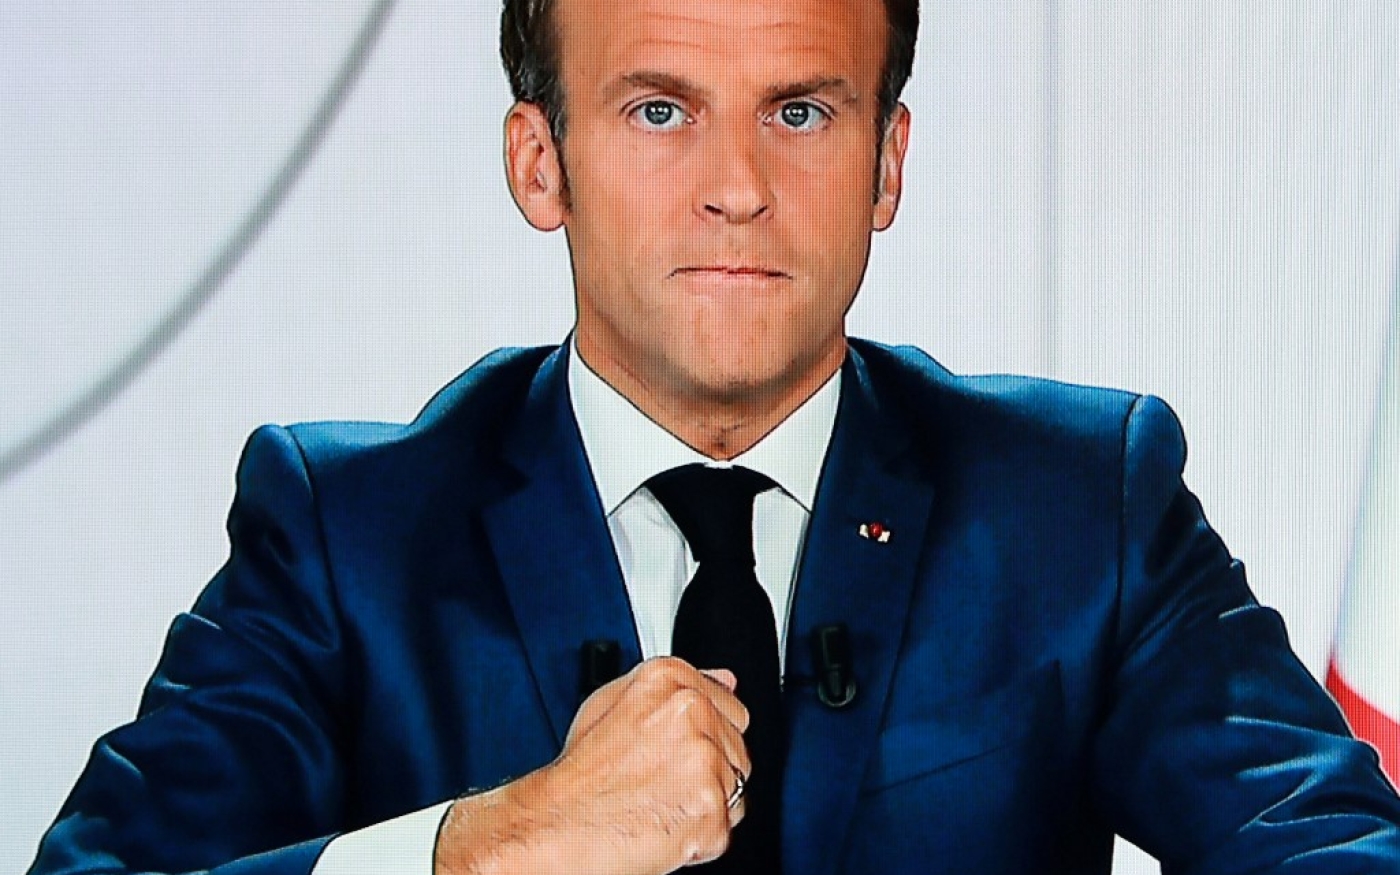 Le 21 juillet 2020, Emmanuel Macron d’une interview télévisée (AFP)